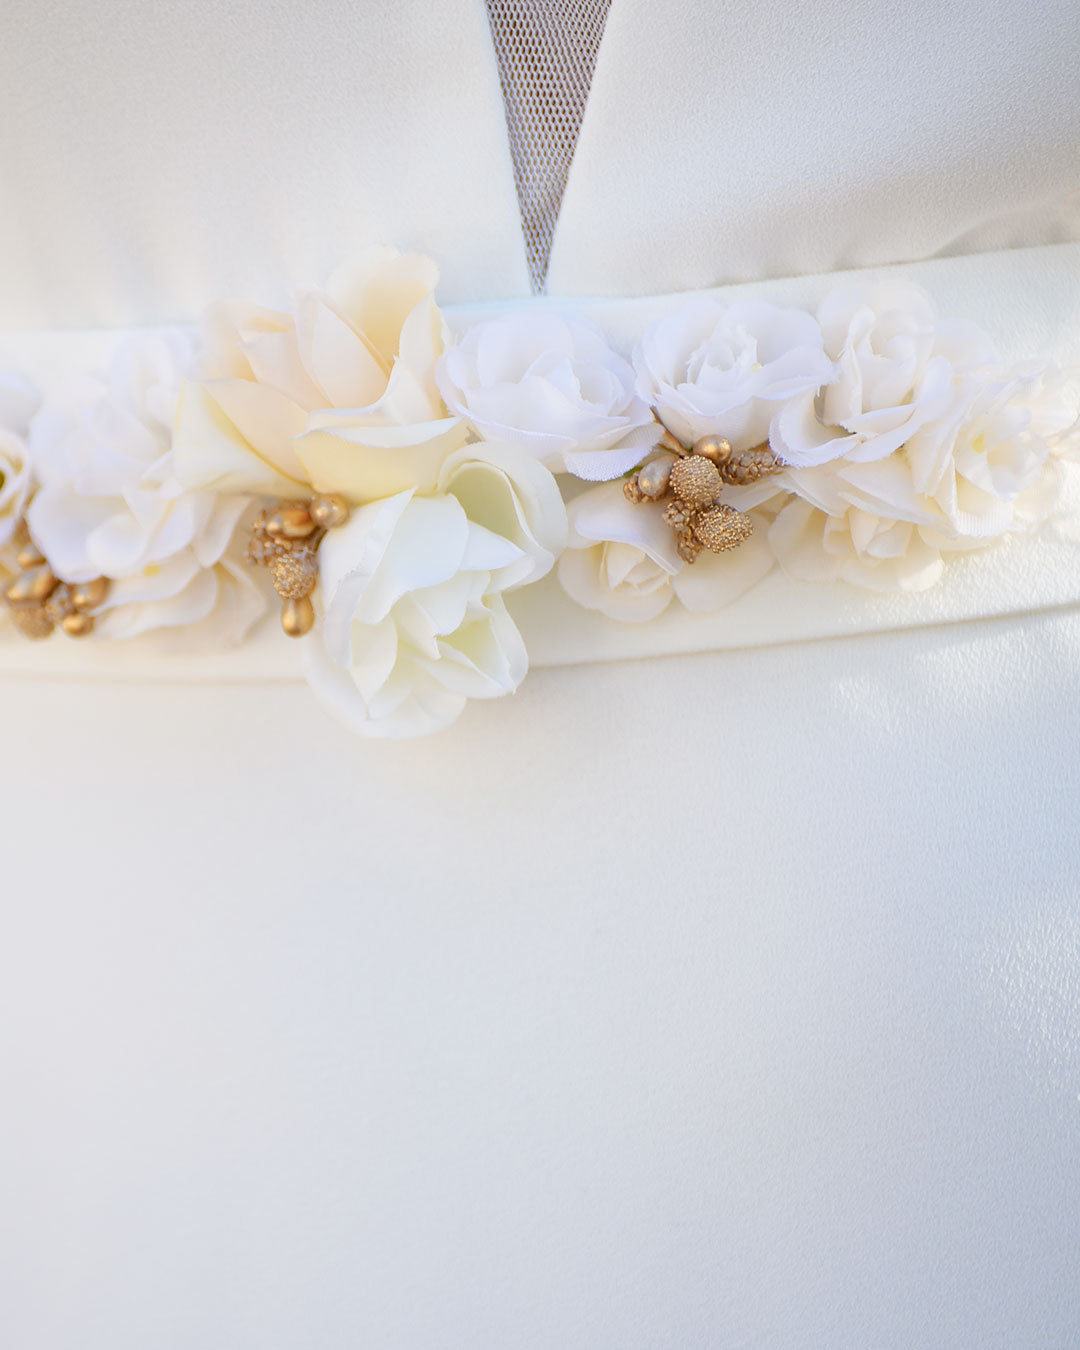 Detalle de cinturón con aplique de flores blancas y doradas.